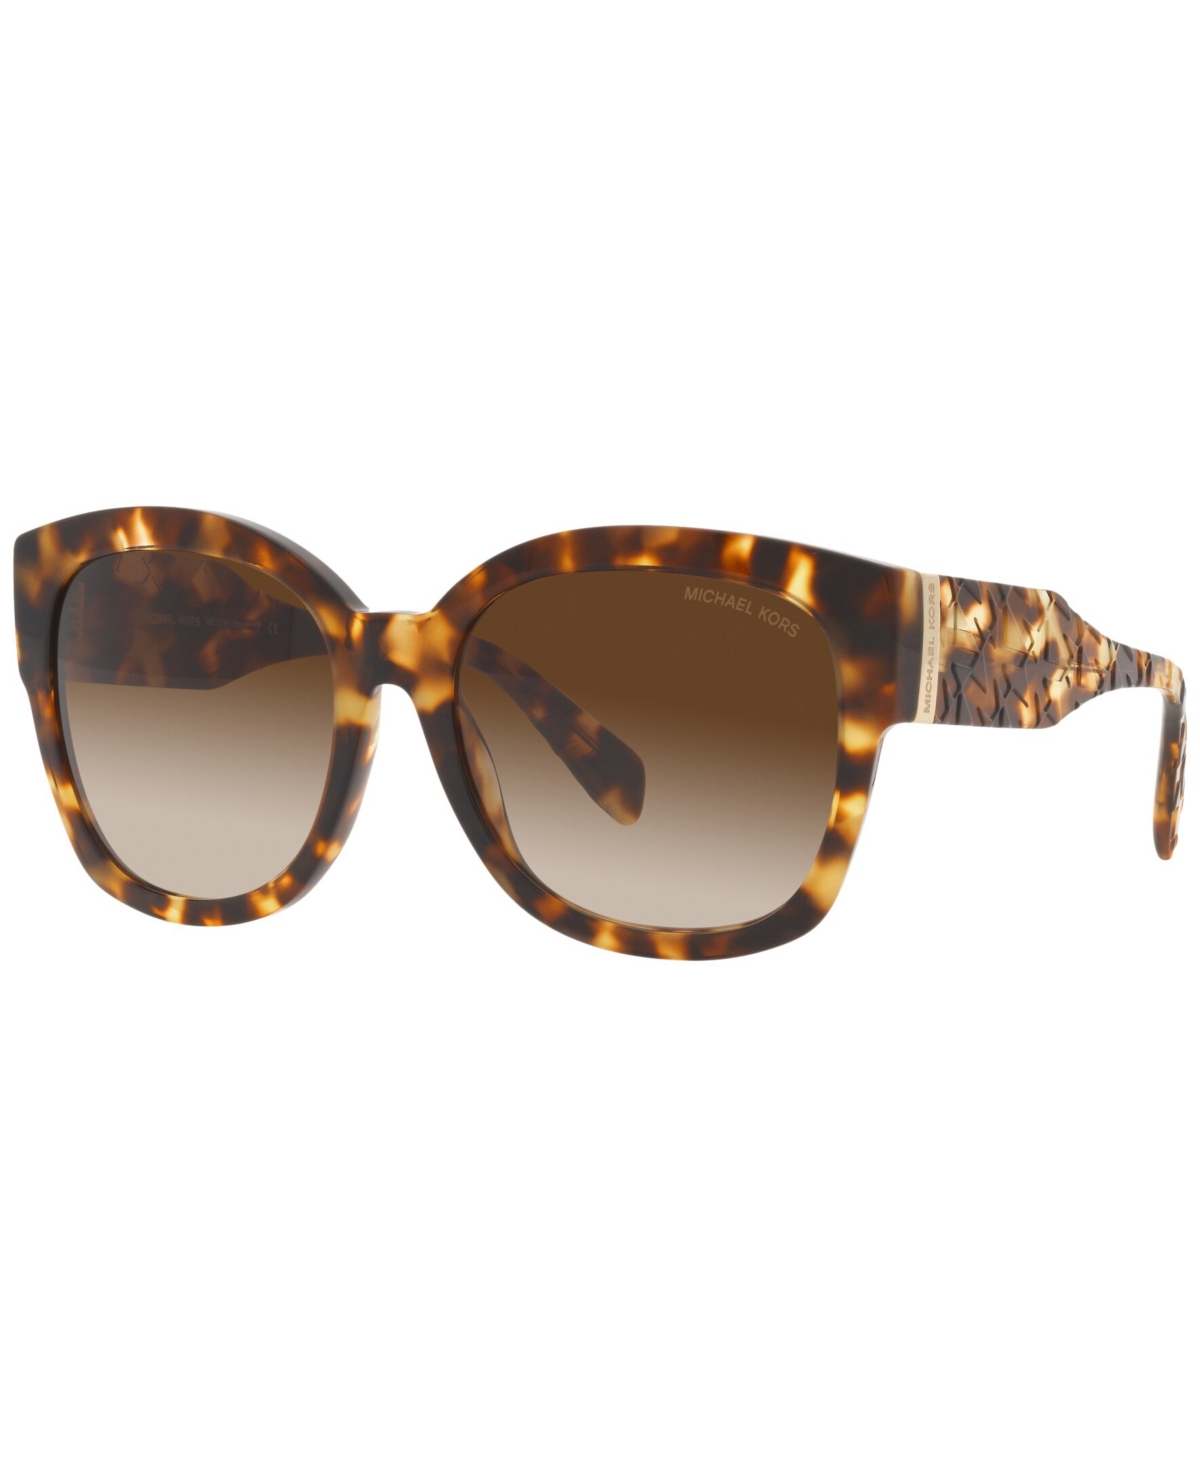 Michael Kors Women's Sunglasses, Mk2164 Baja In Jet Set Tortoise